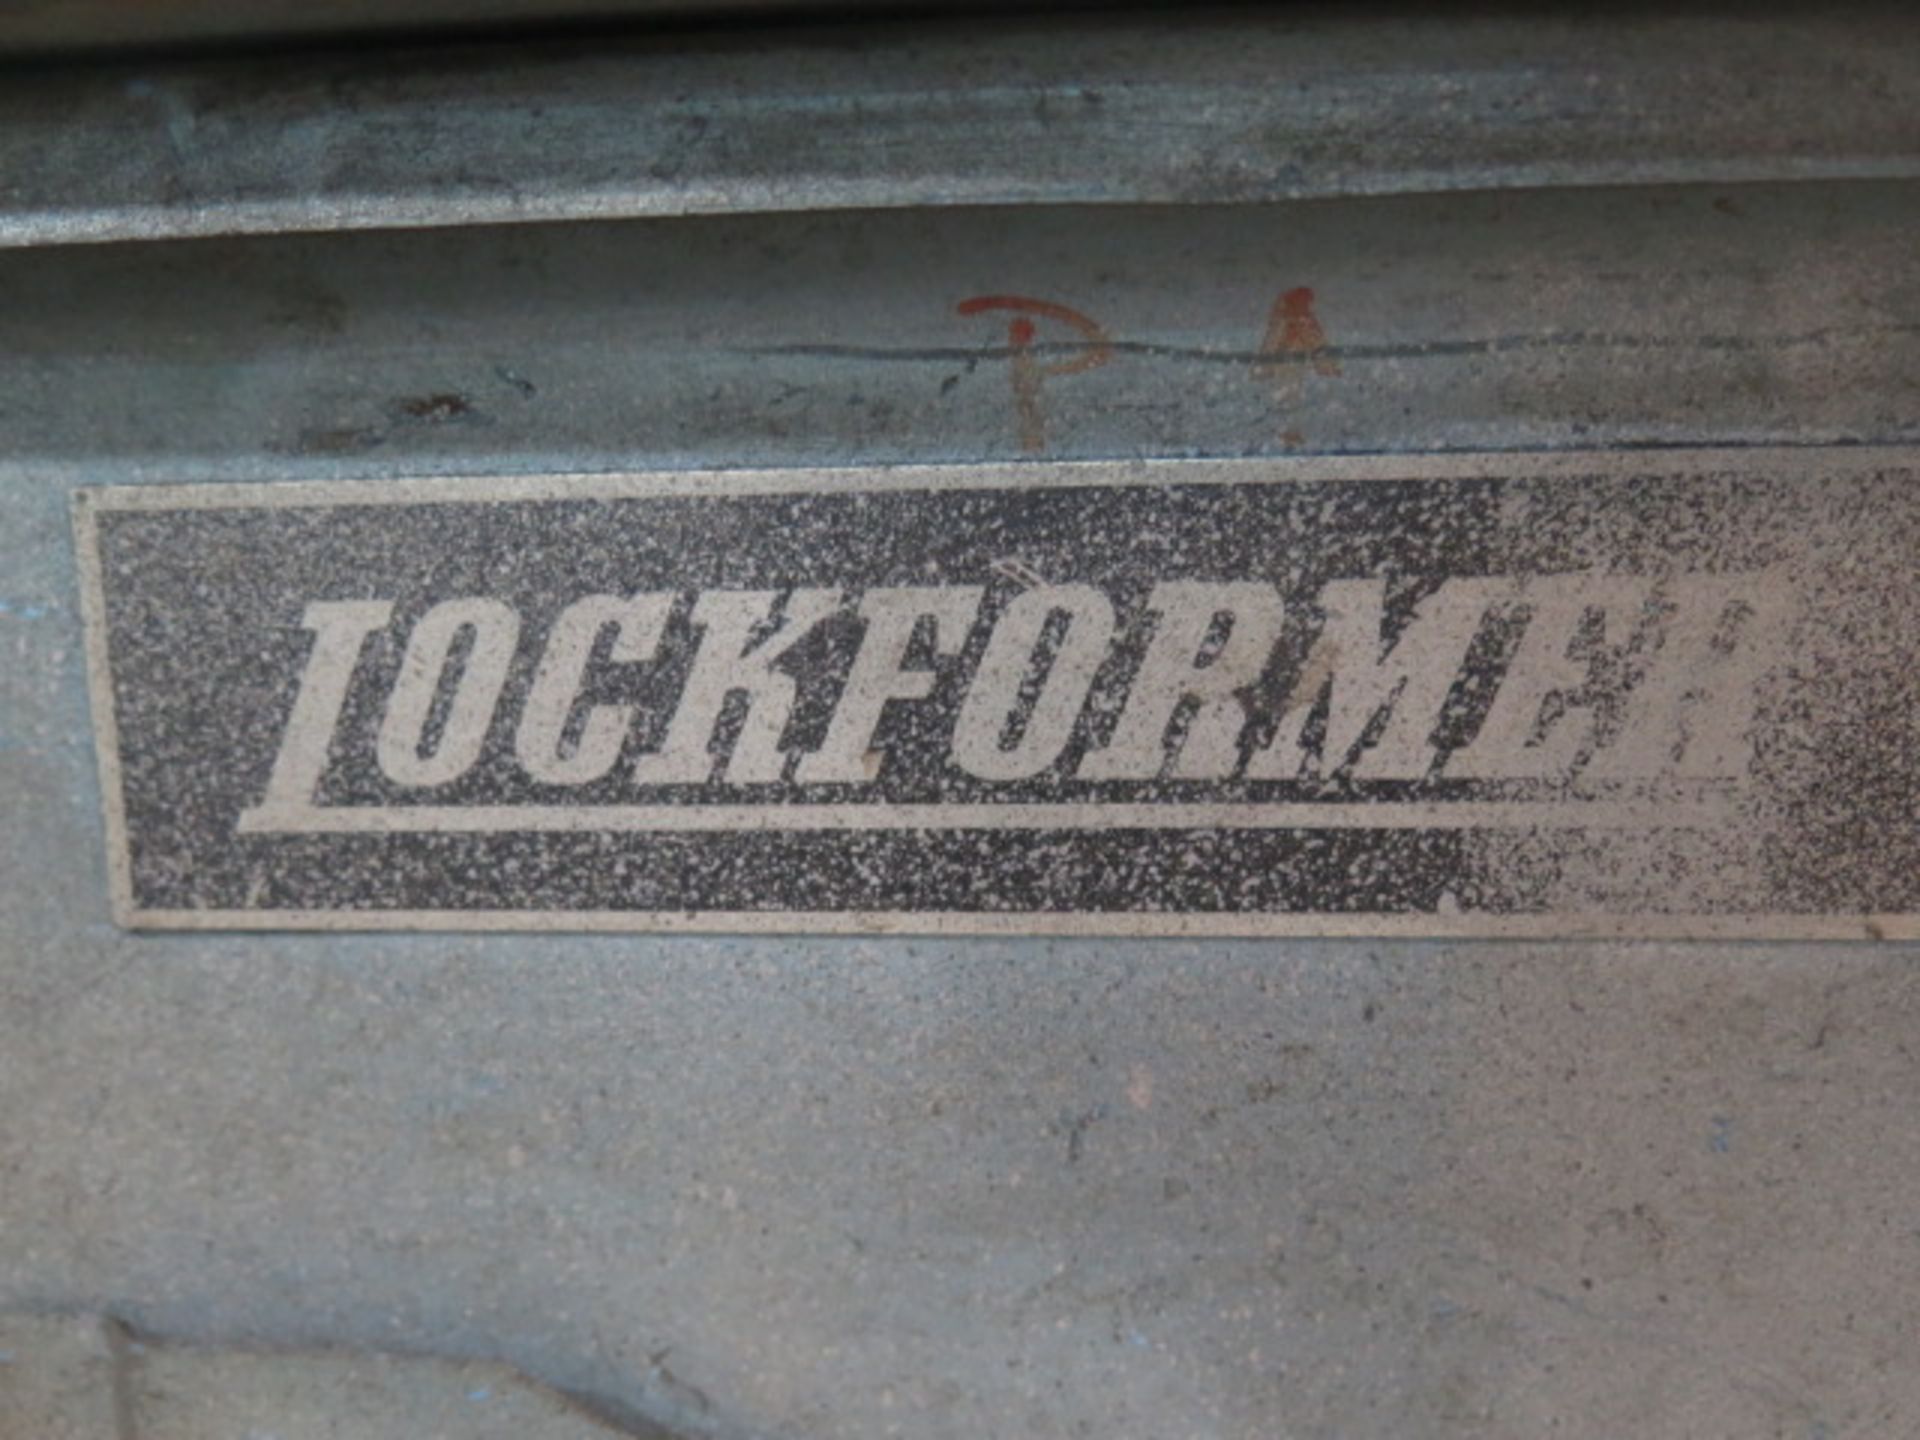 Lockformer 5-Roll Roll Former - Image 6 of 6